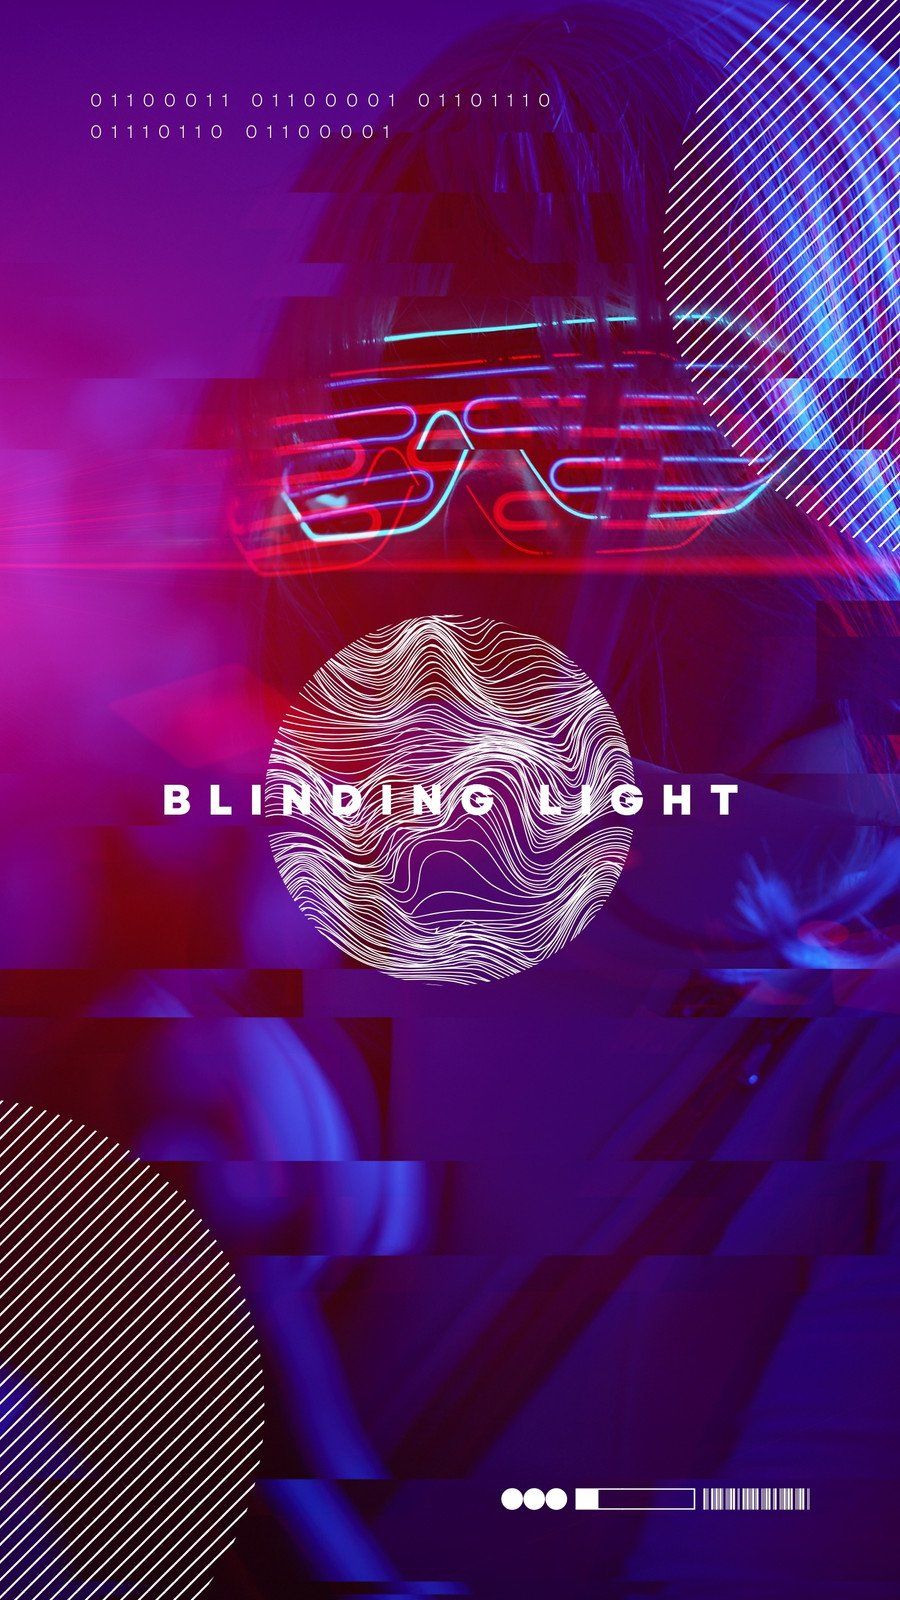 A poster for a show called Blinding Light - Cyberpunk 2077